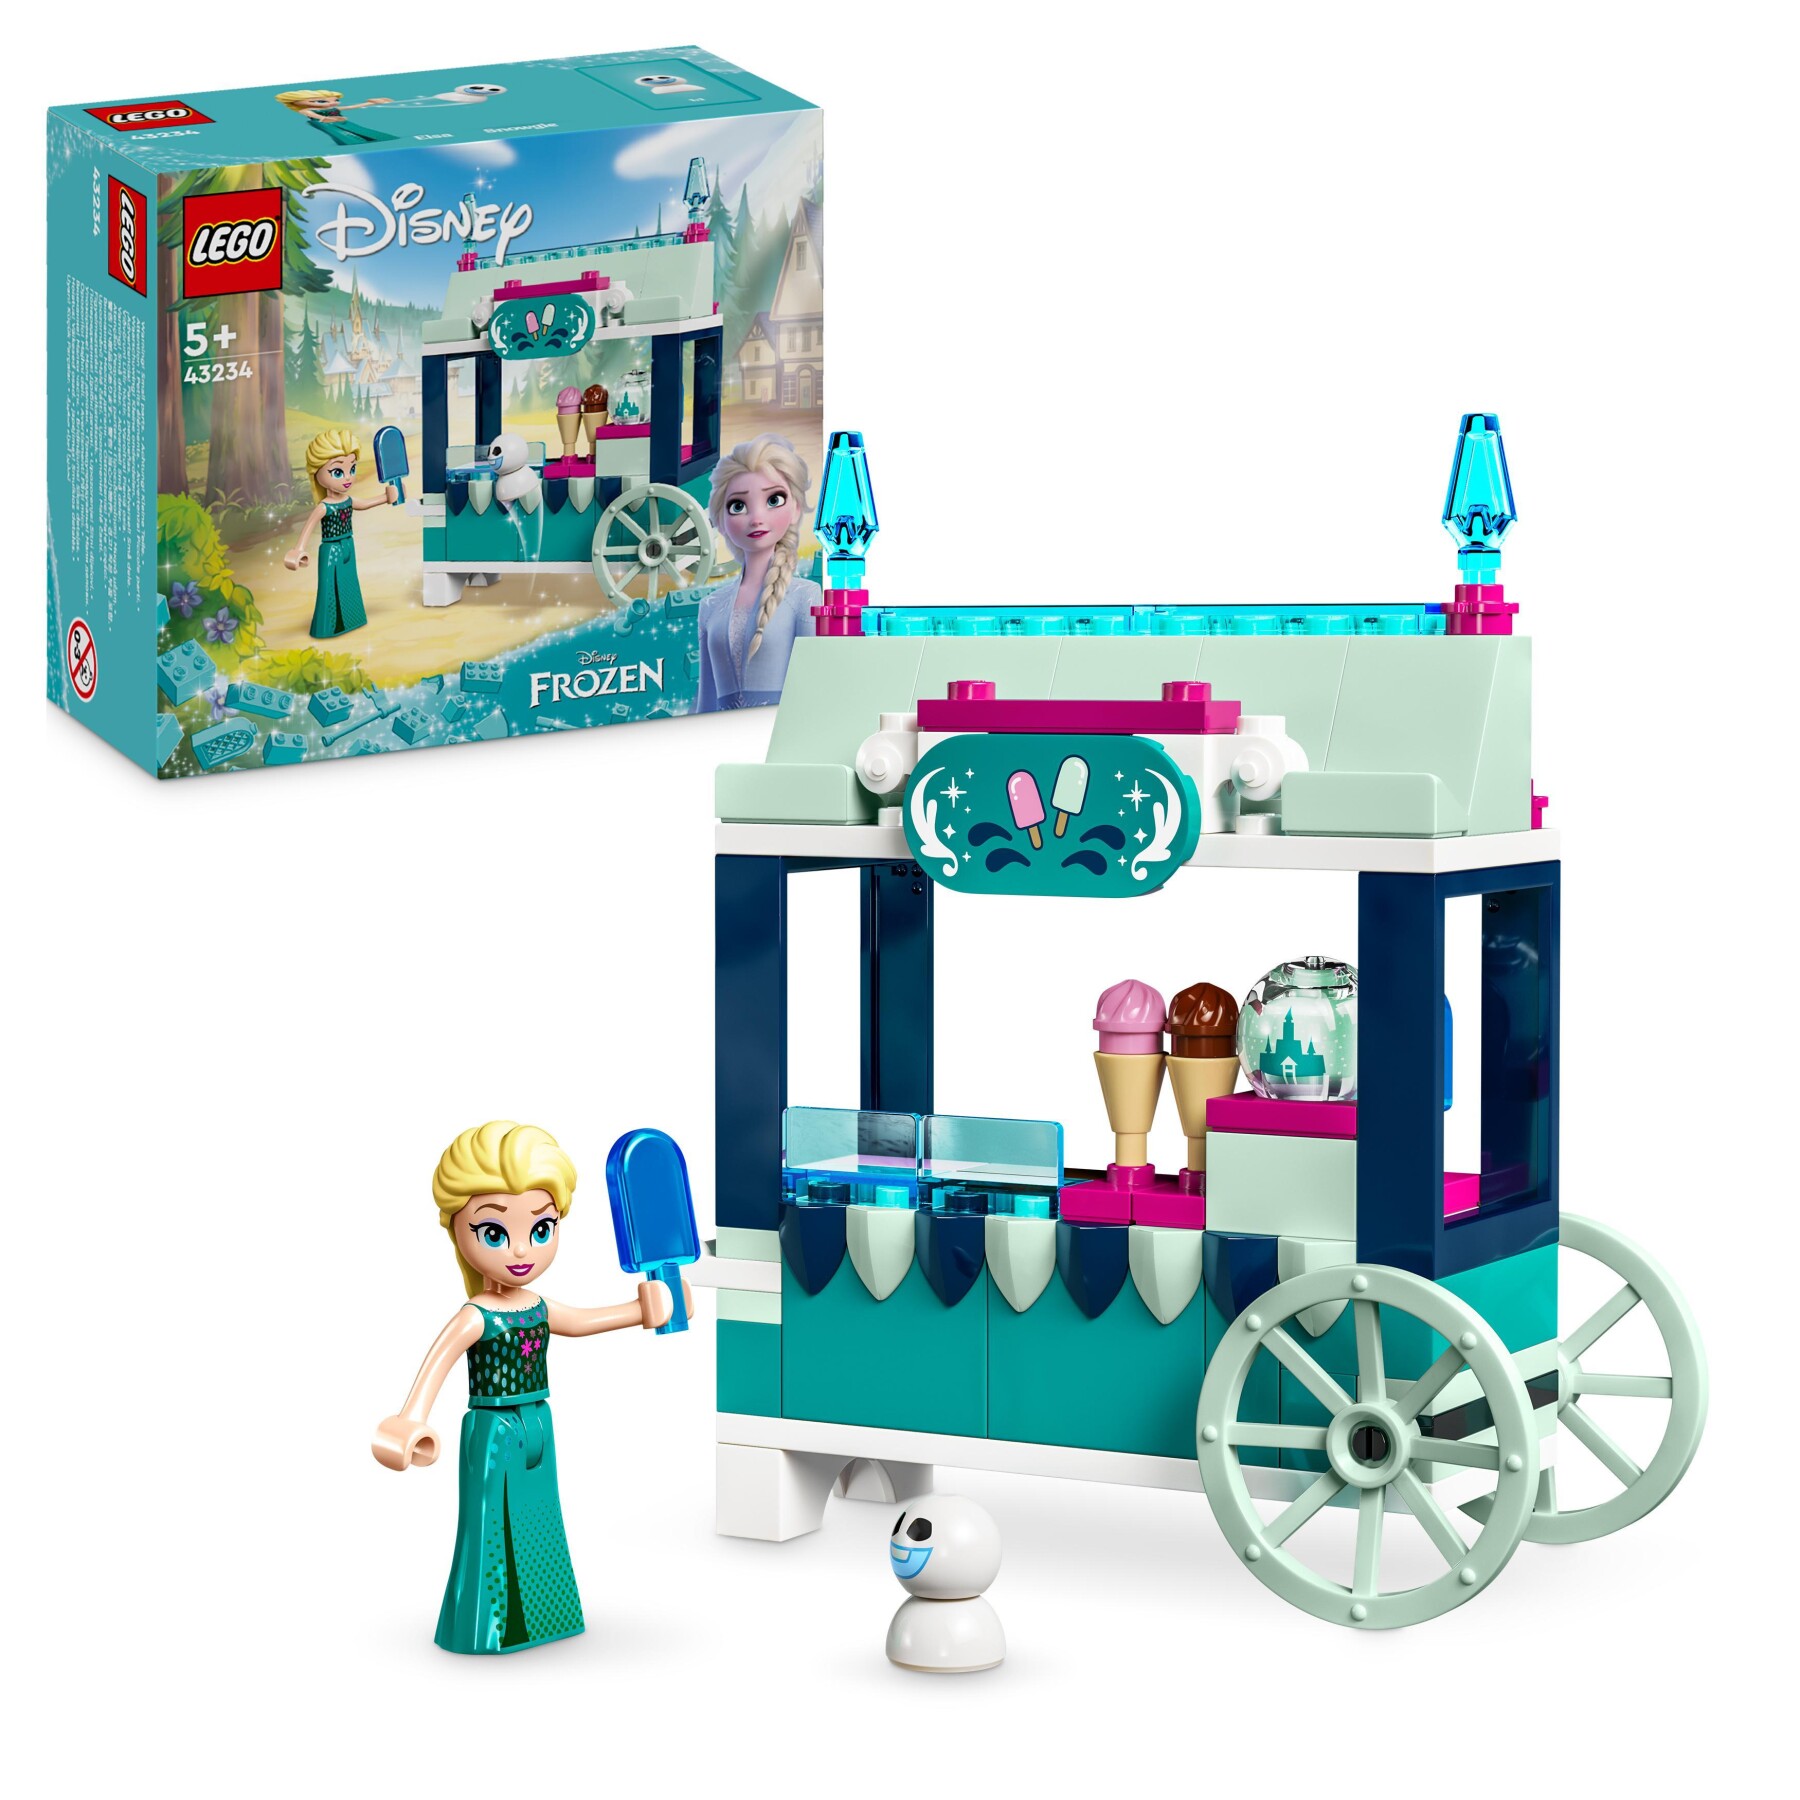 Lego disney princess 43234 le delizie al gelato di elsa frozen, carretto dei gelati delle principesse, giochi per bambini 5+